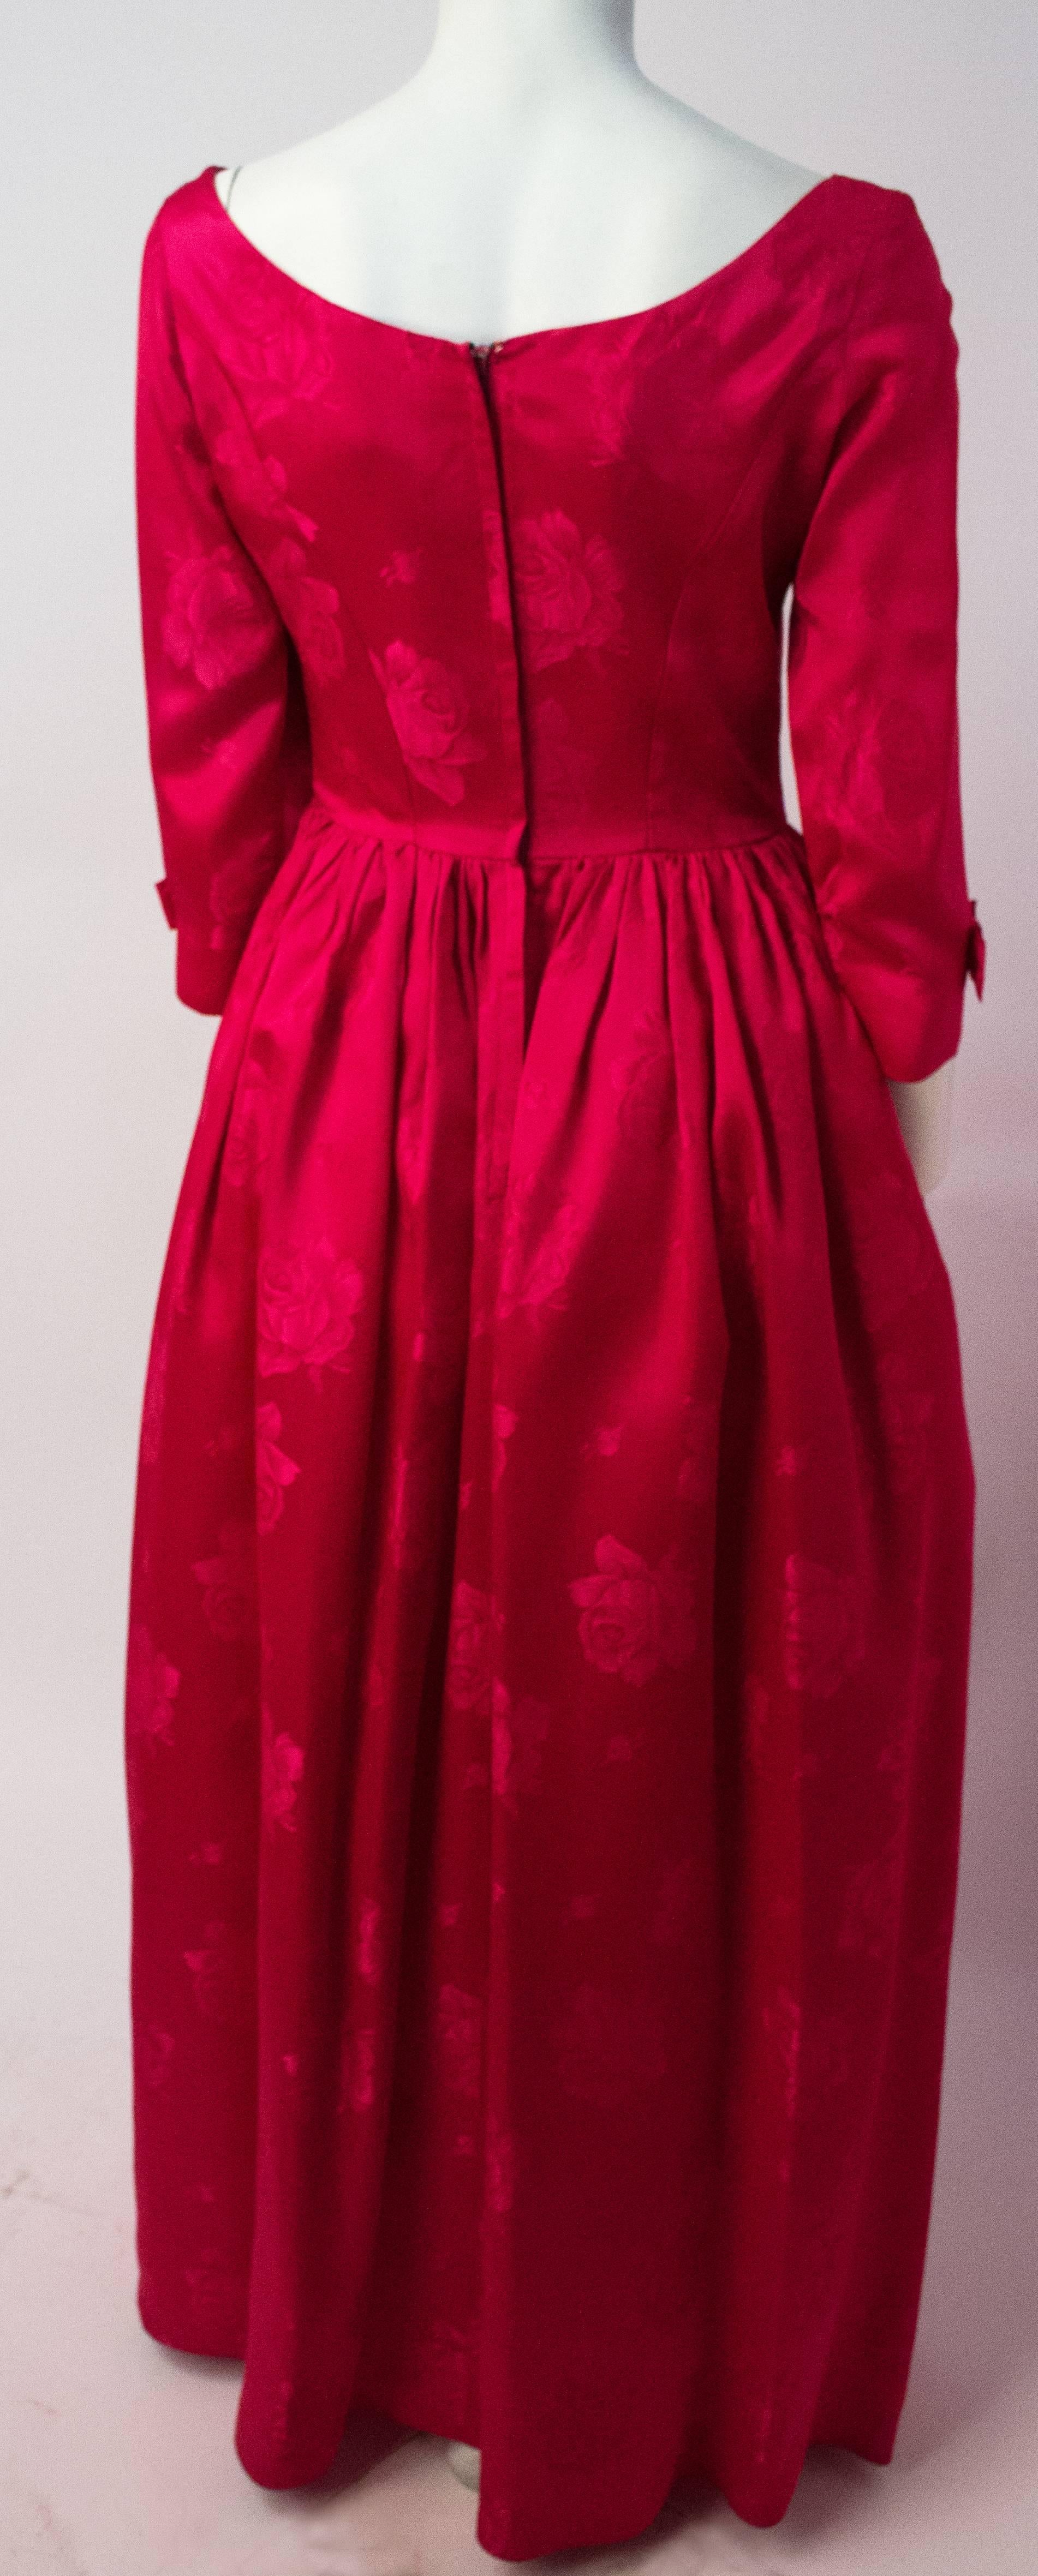 robe des années 50 en jacquard rose magenta. Fermeture éclair arrière en métal. Jupe doublée en tulle. 